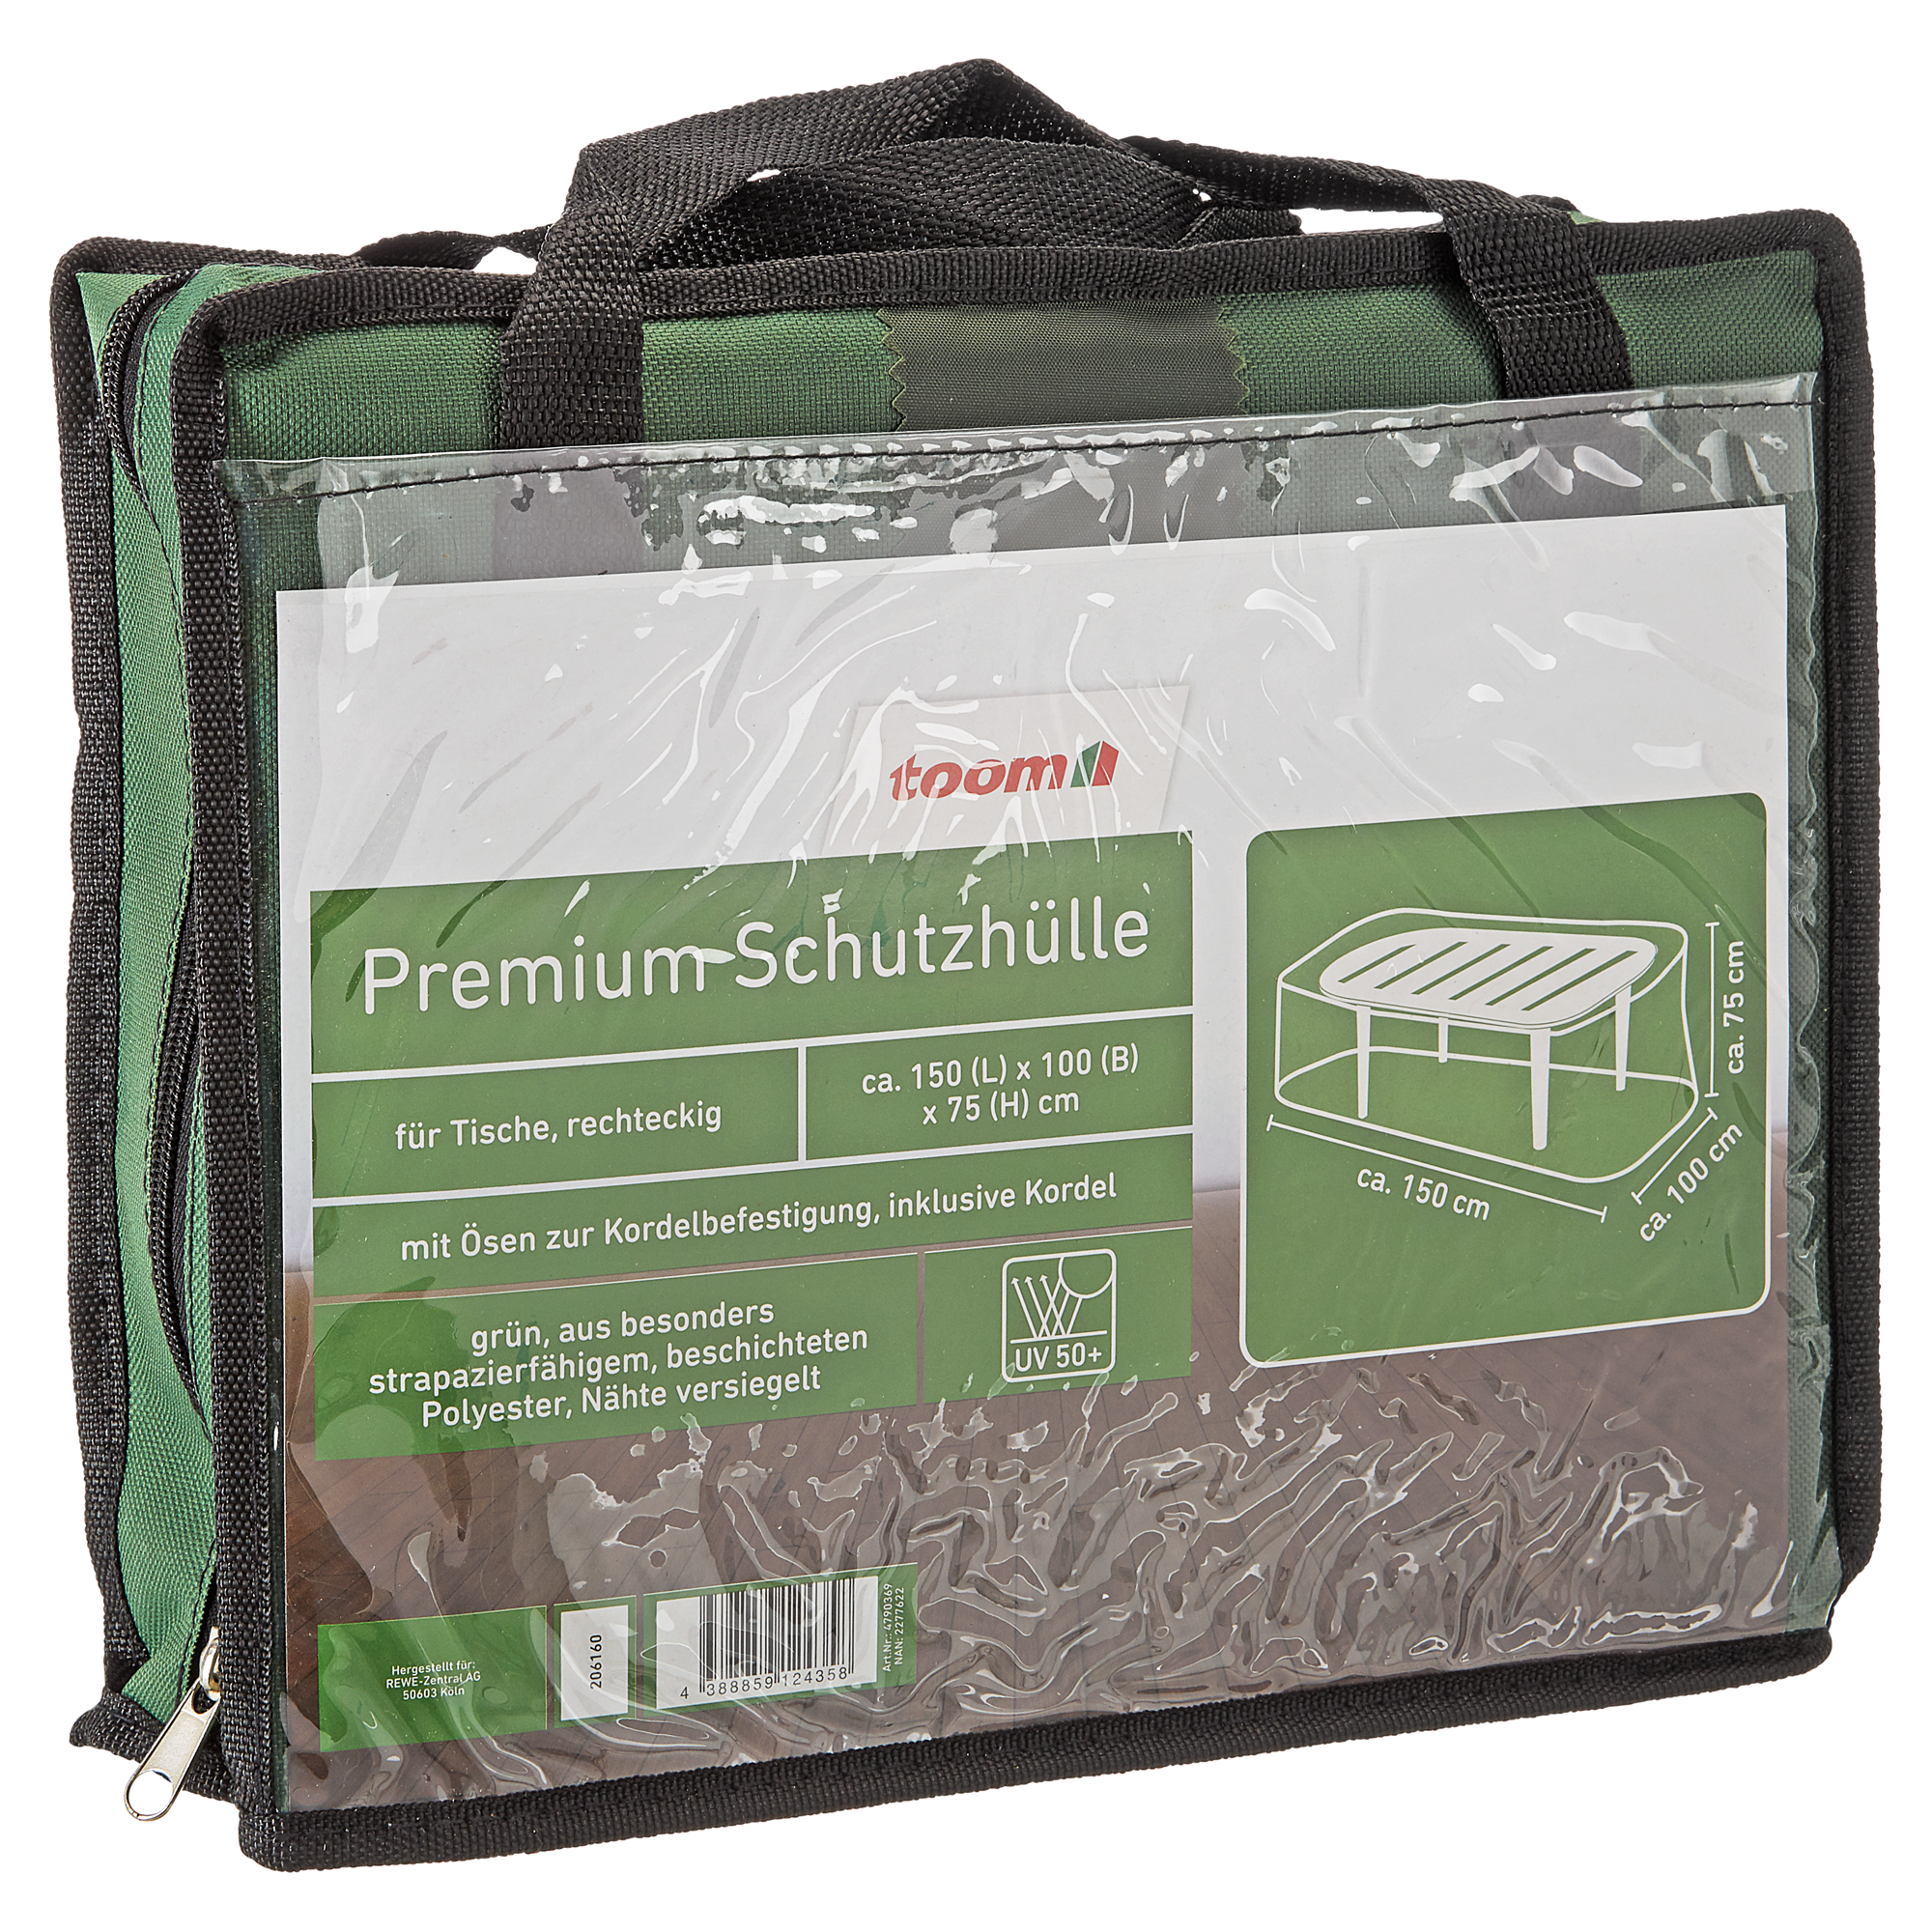 Schutzhülle 'Premium' grün 150 x 100 x 75 cm, für Gartenmöbel-Set + product picture